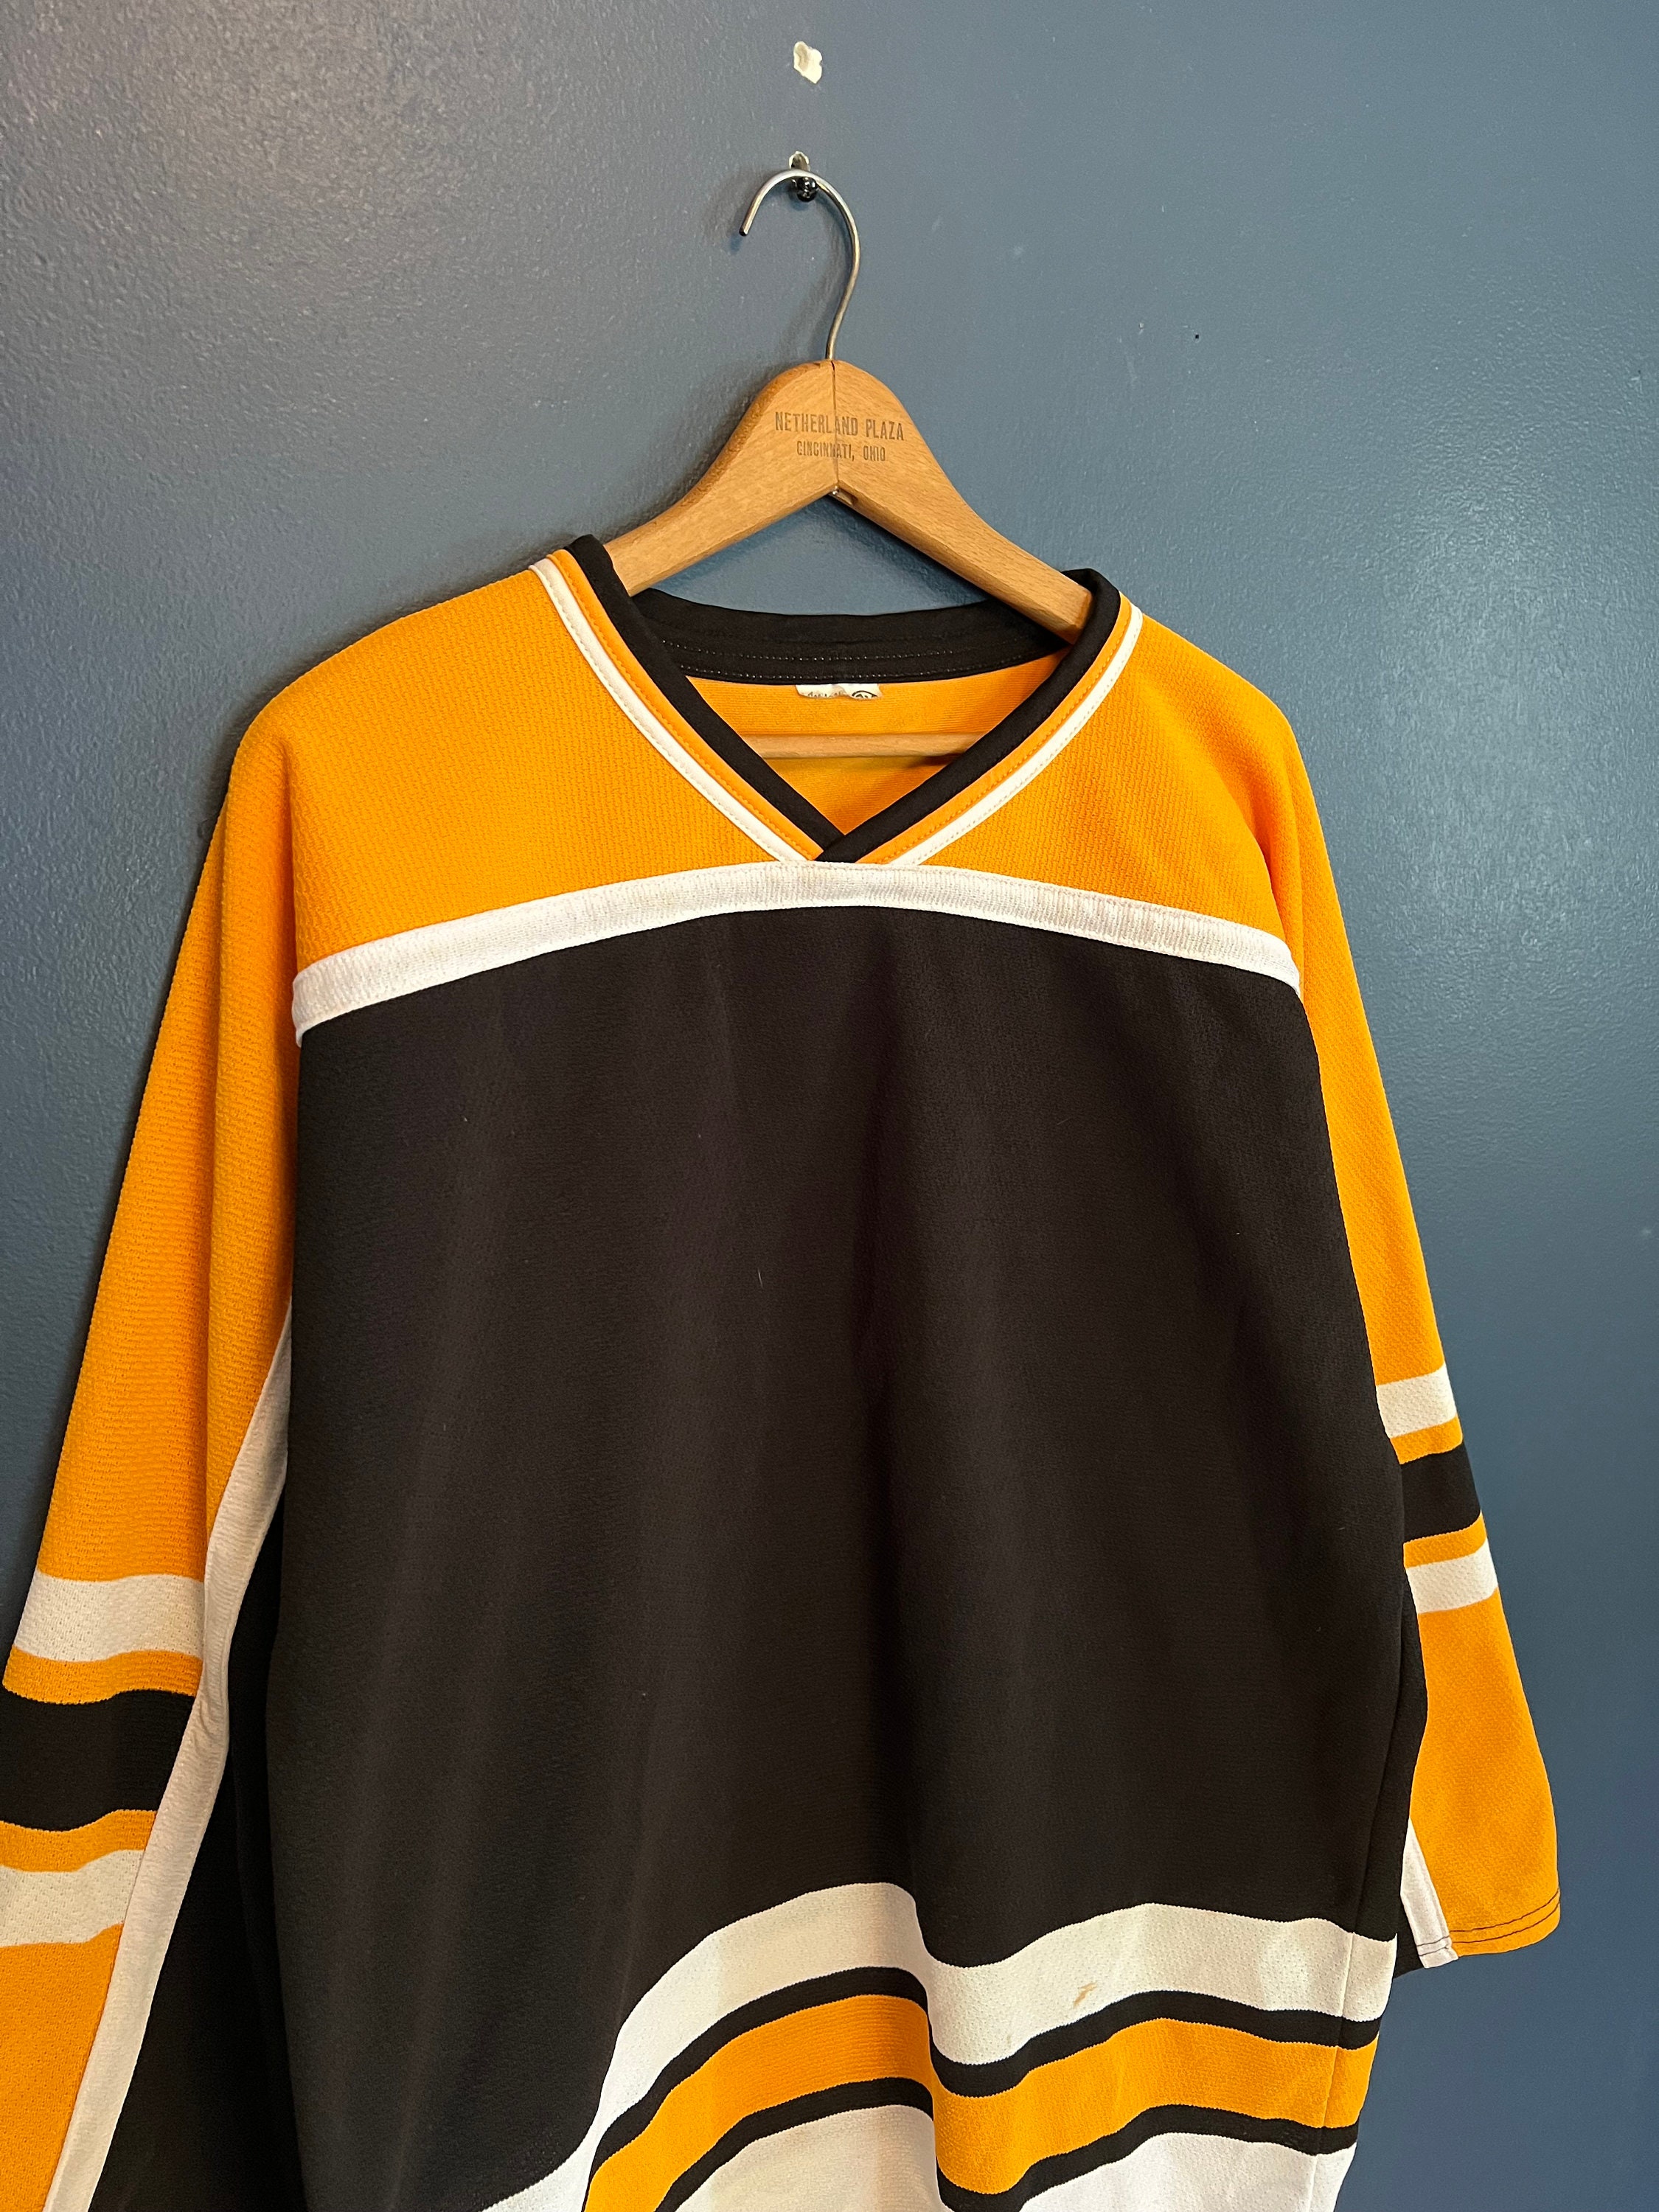 Blank Hockey Jerseys – ™